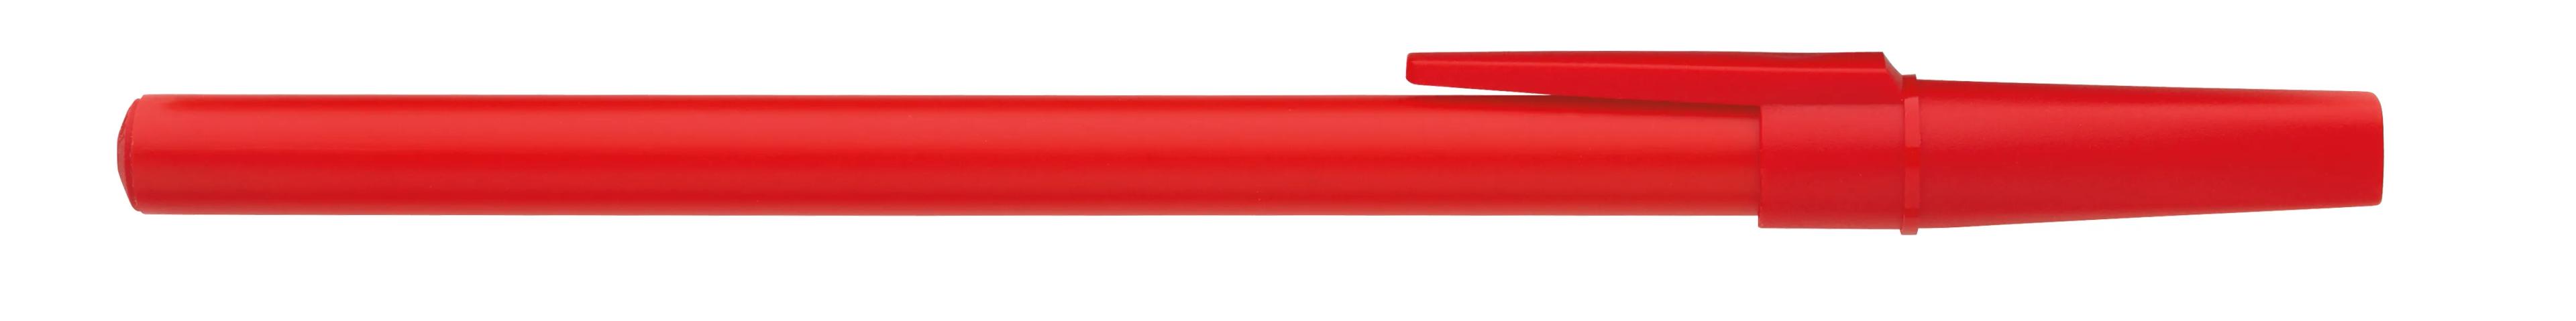 Corporate Promo Stick Pen 15 of 33